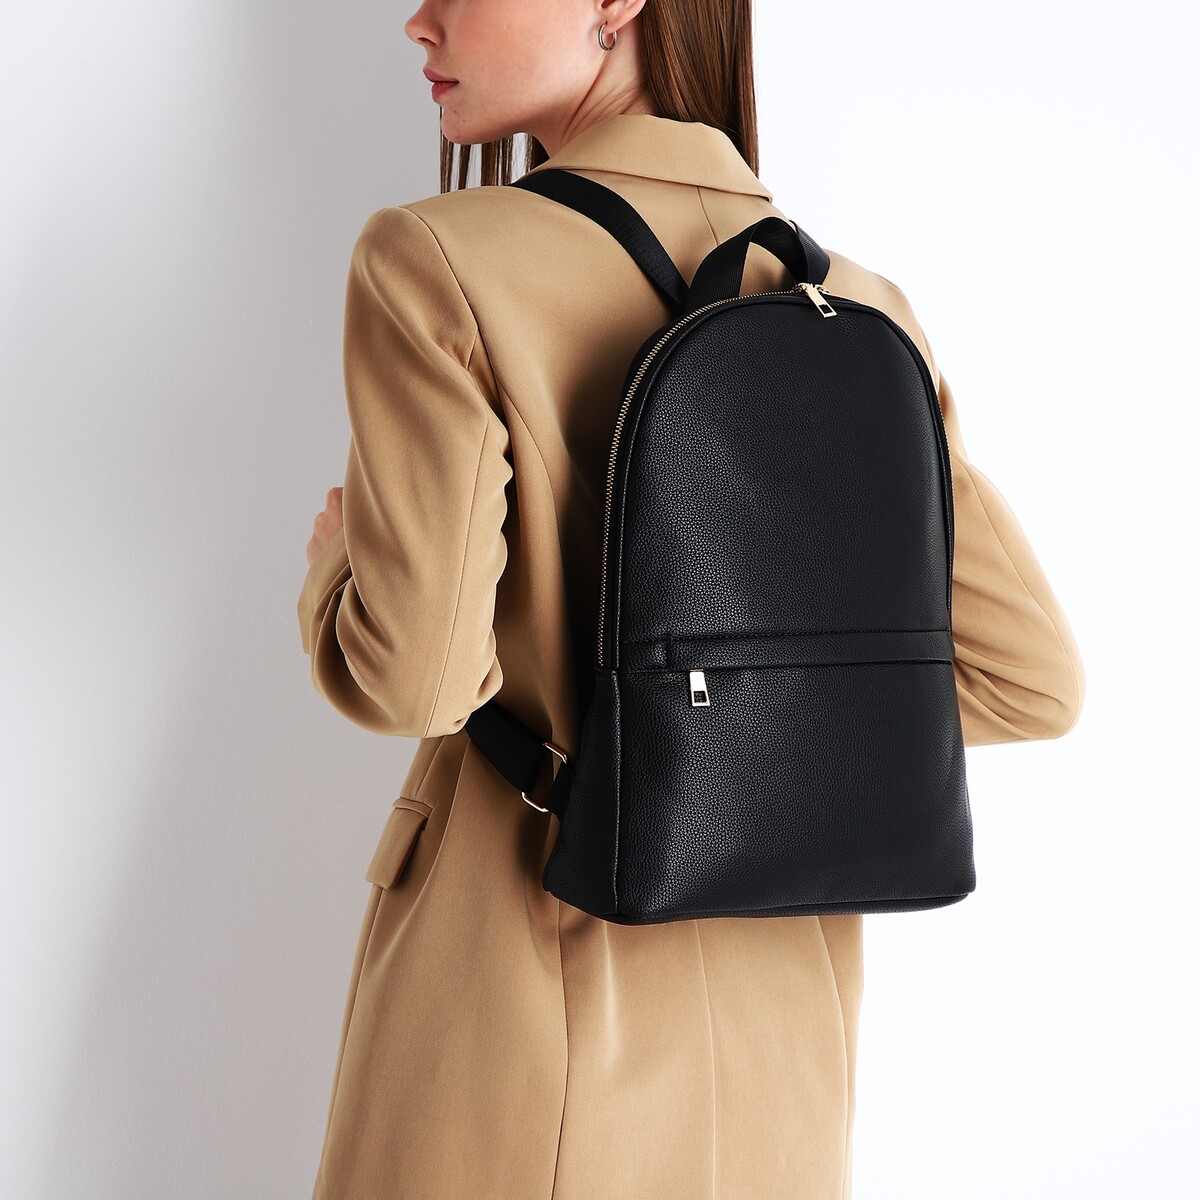 Рюкзак женский из искусственной кожи на молнии, 2 кармана, цвет черный рюкзак женский из искусственной кожи на молнии 3 кармана